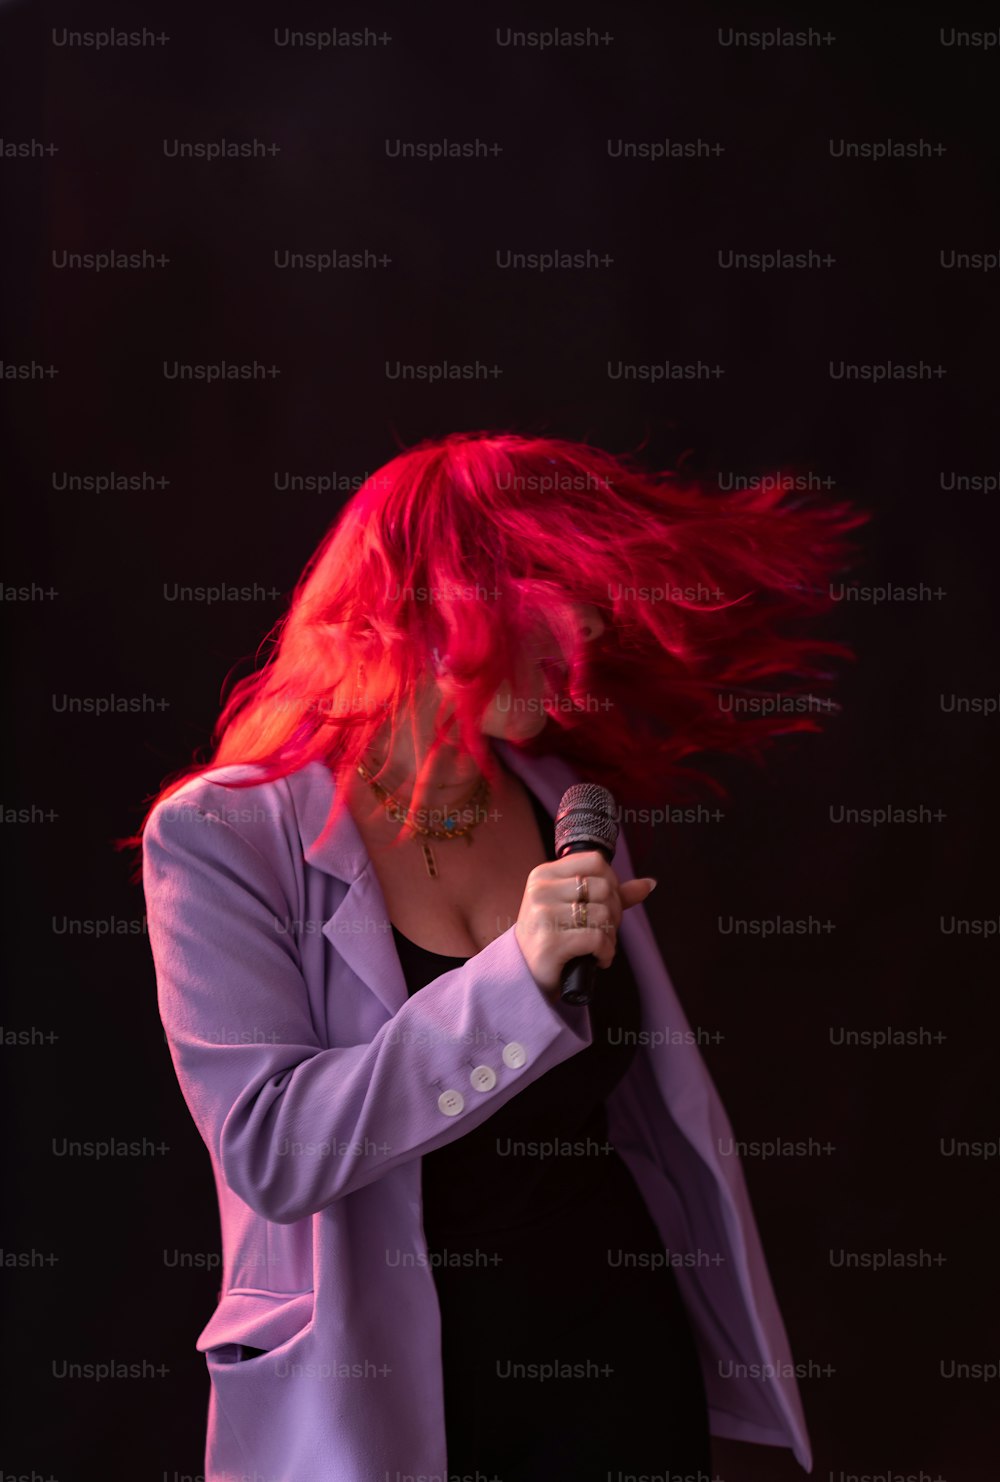 Eine Frau mit roten Haaren, die ein Mikrofon hält